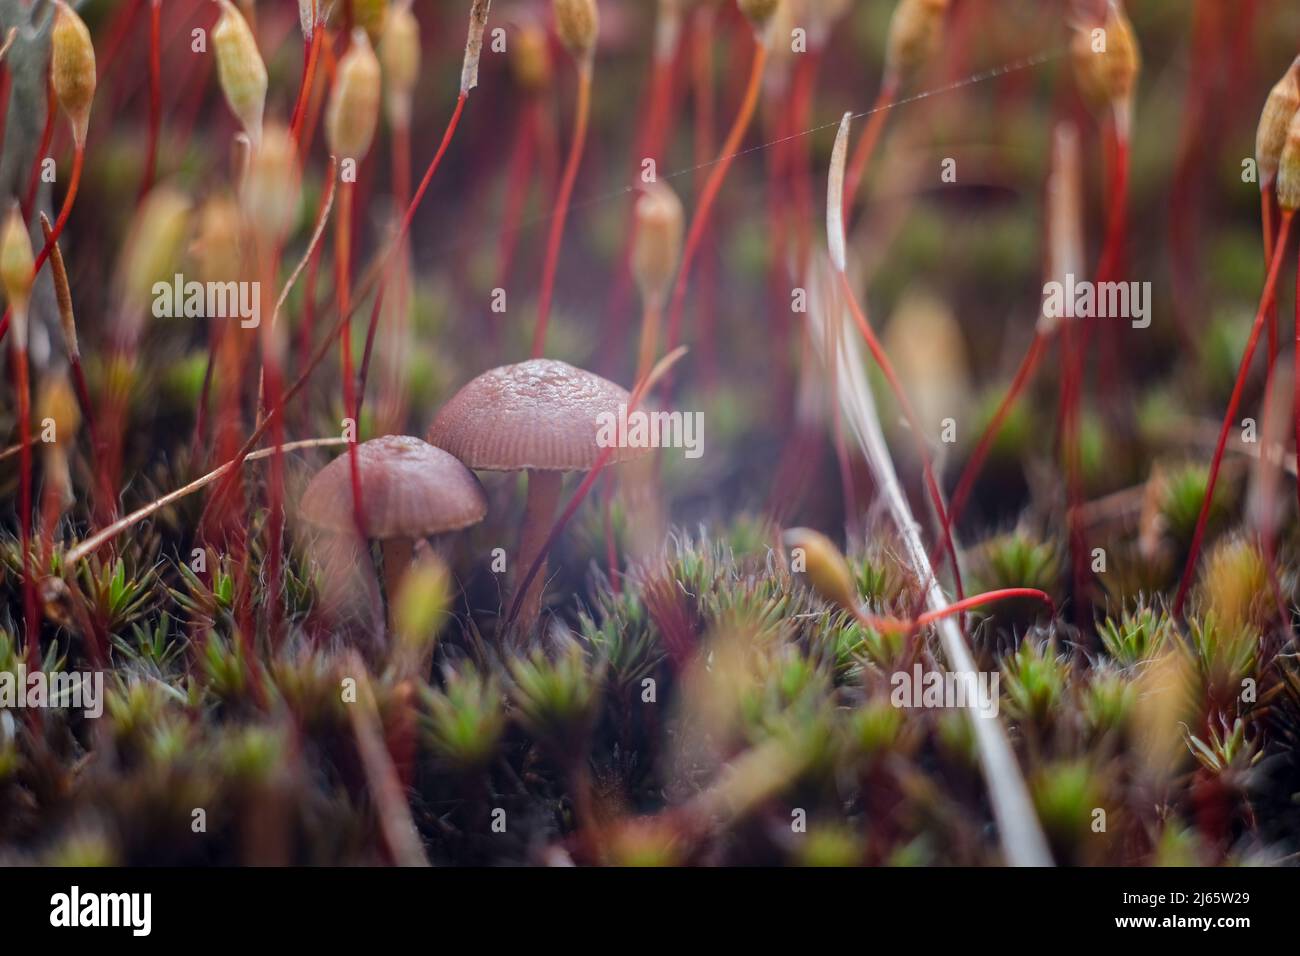 Macro world of moss and mushrooms. Stock Photo